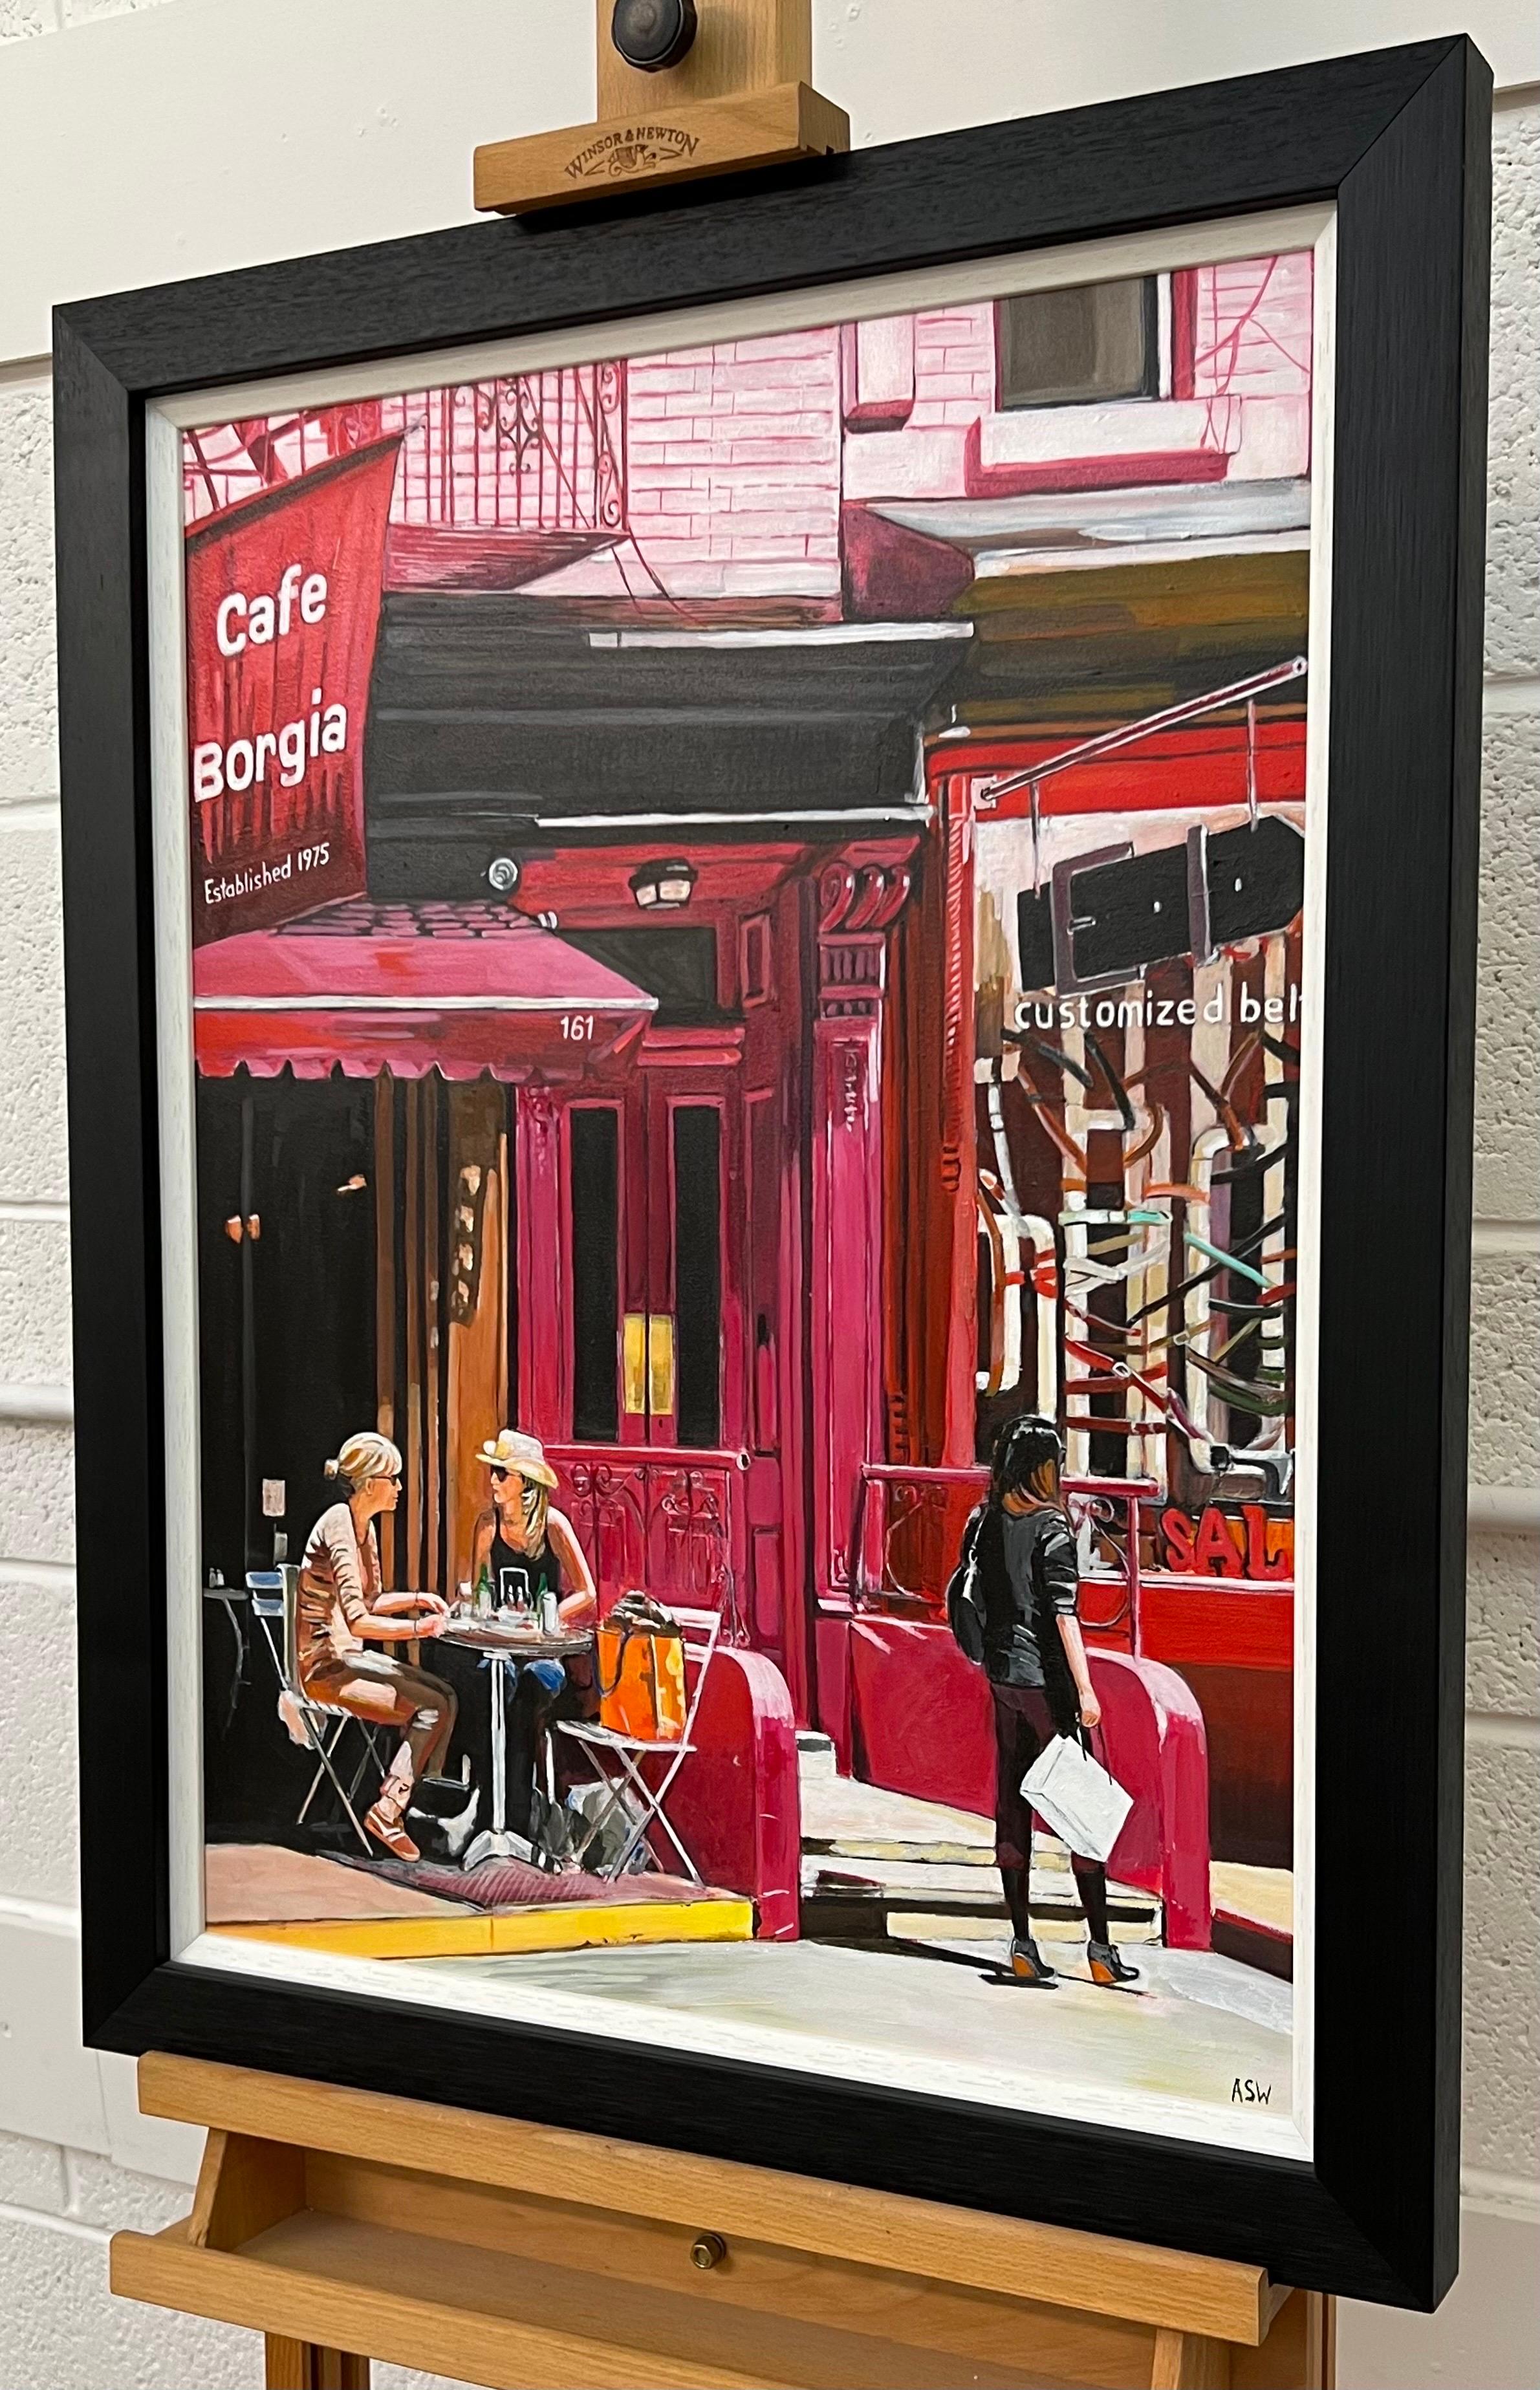 New York City Cafe Borgia mit weiblichen Figuren der zeitgenössischen britischen Künstlerin Angela Wakefield. Dies ist ein wichtiges Werk aus ihrer New Yorker Serie.

Kunst misst 18 x 24 Zoll 
Rahmen misst 23 x 29 Zoll 

Wakefields Werk ist eine